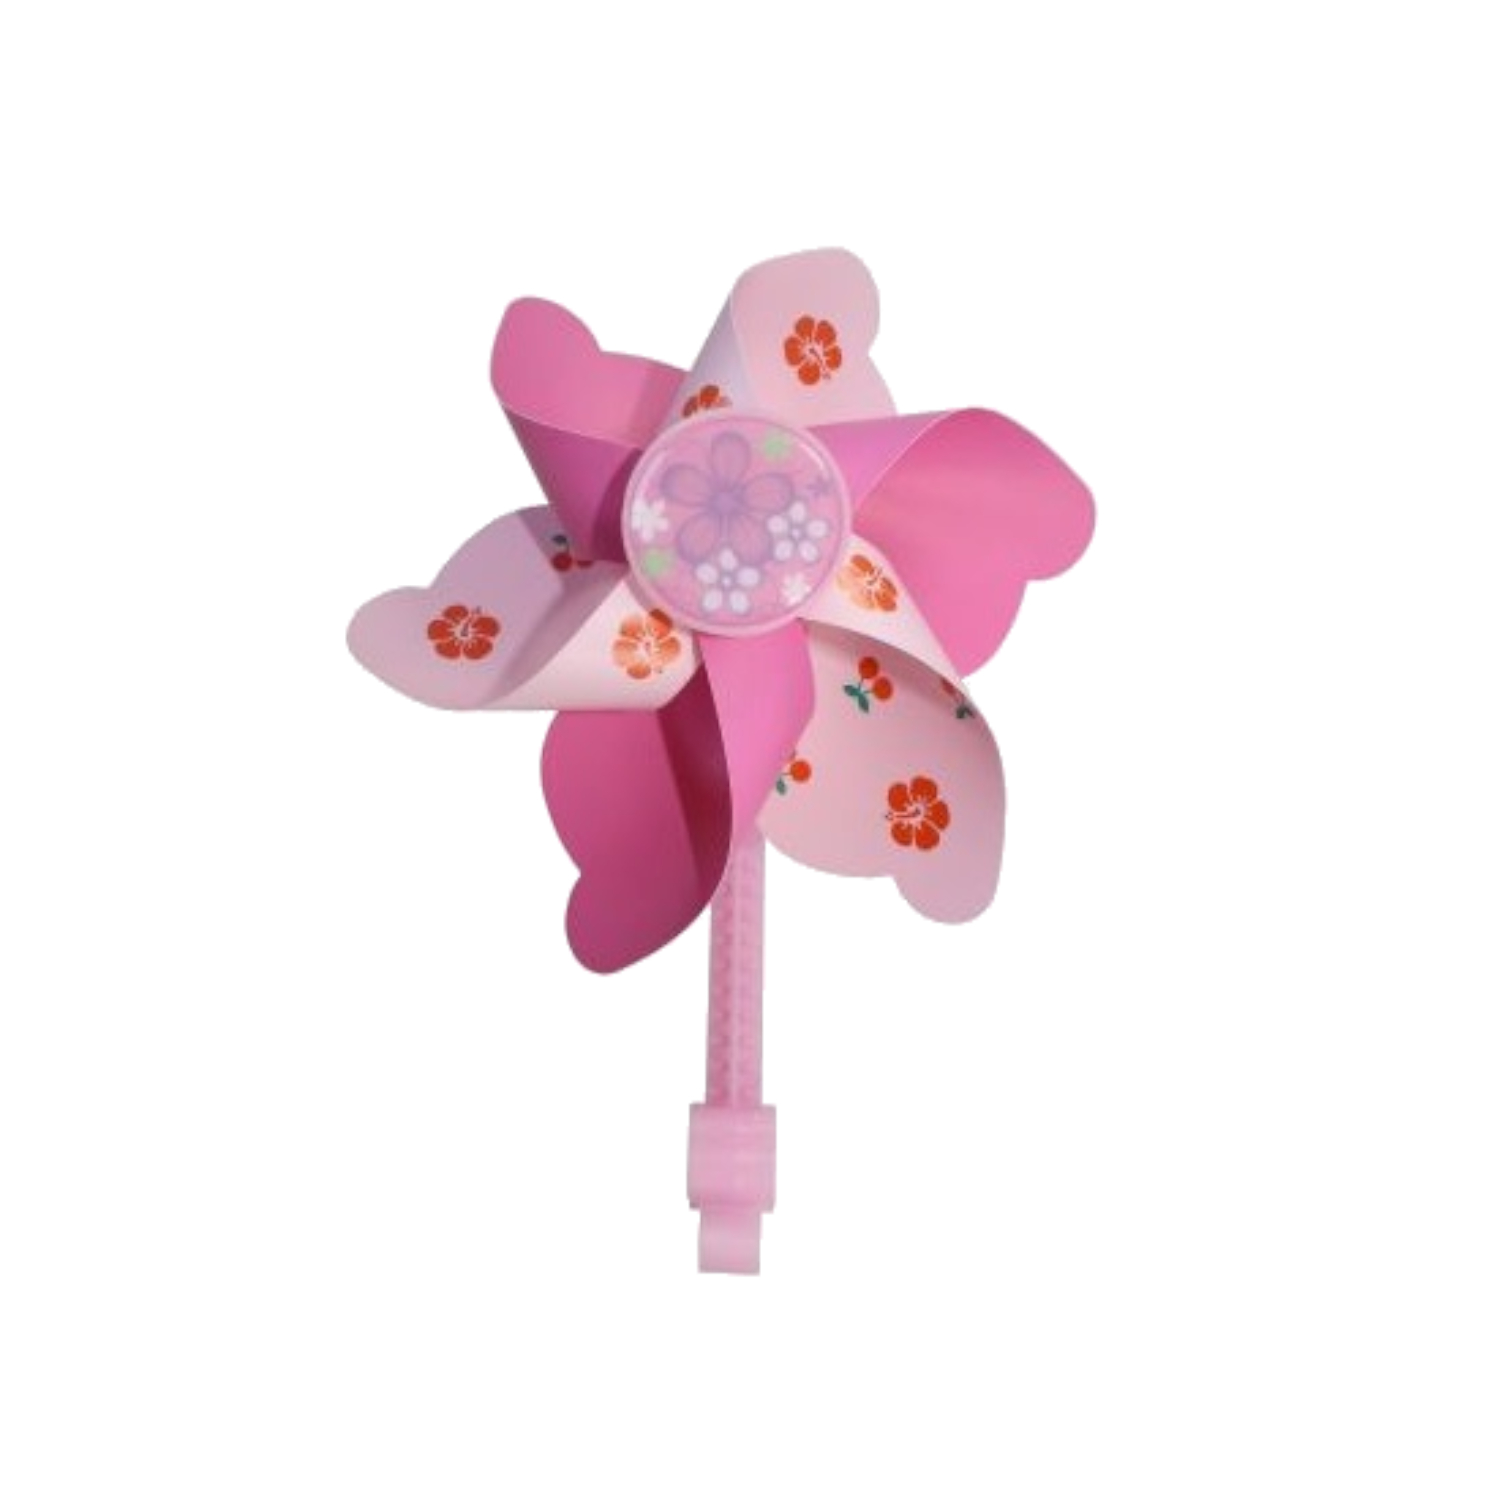 Fahrrad Windmühle Cherry + Flower in Pink